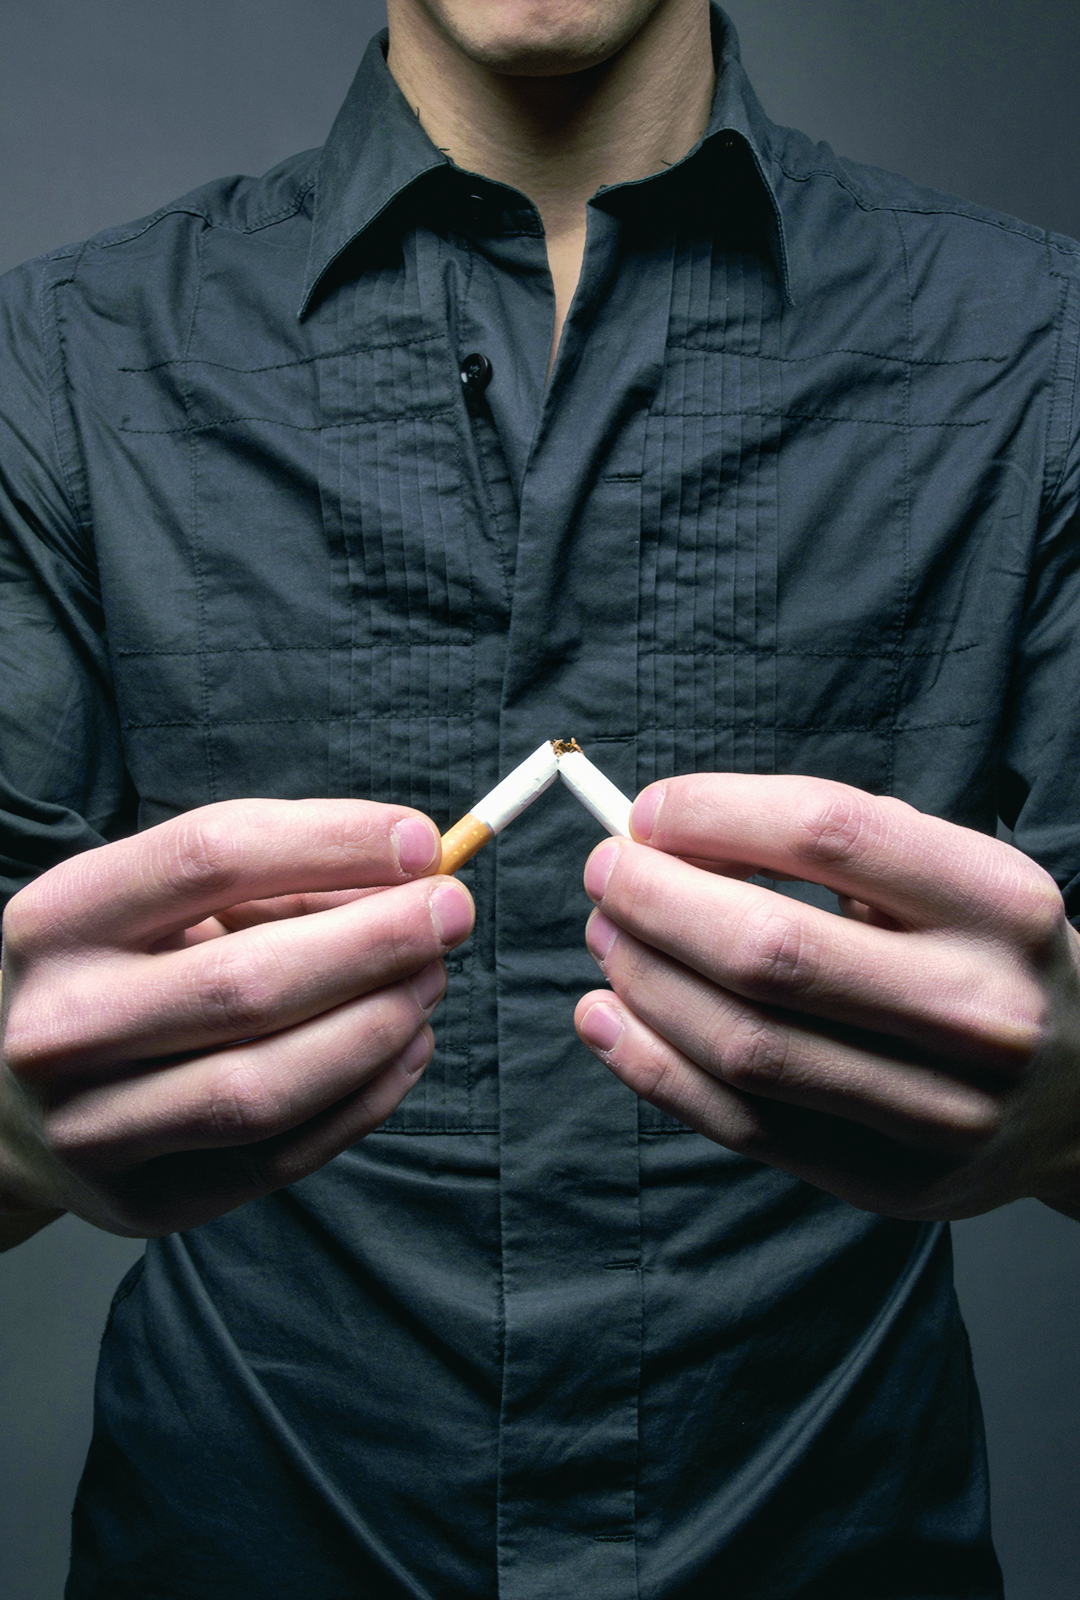 Intervention chirurgicale : Quels sont les impacts du tabagisme sur la guérison ?